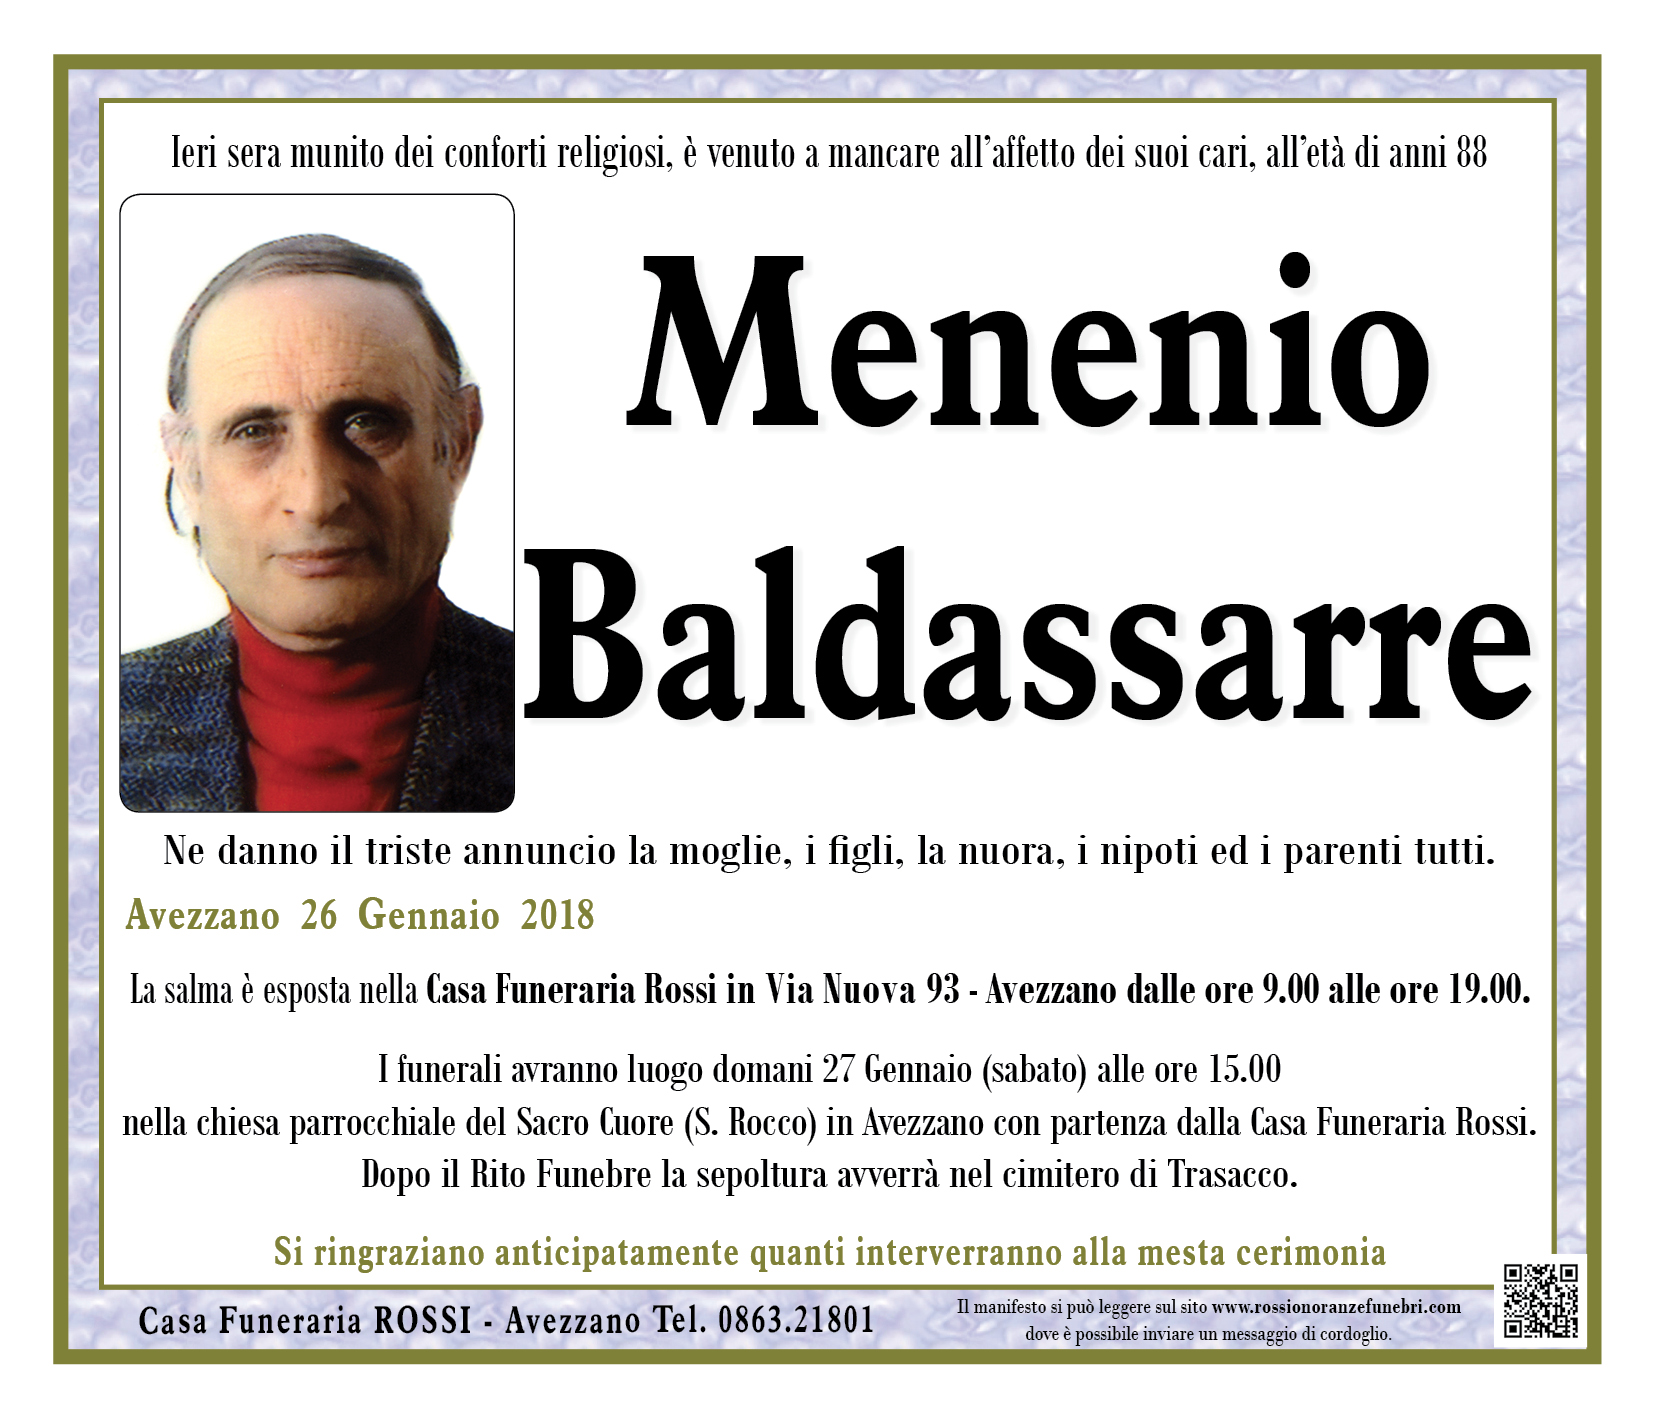 Menenio Baldassarre